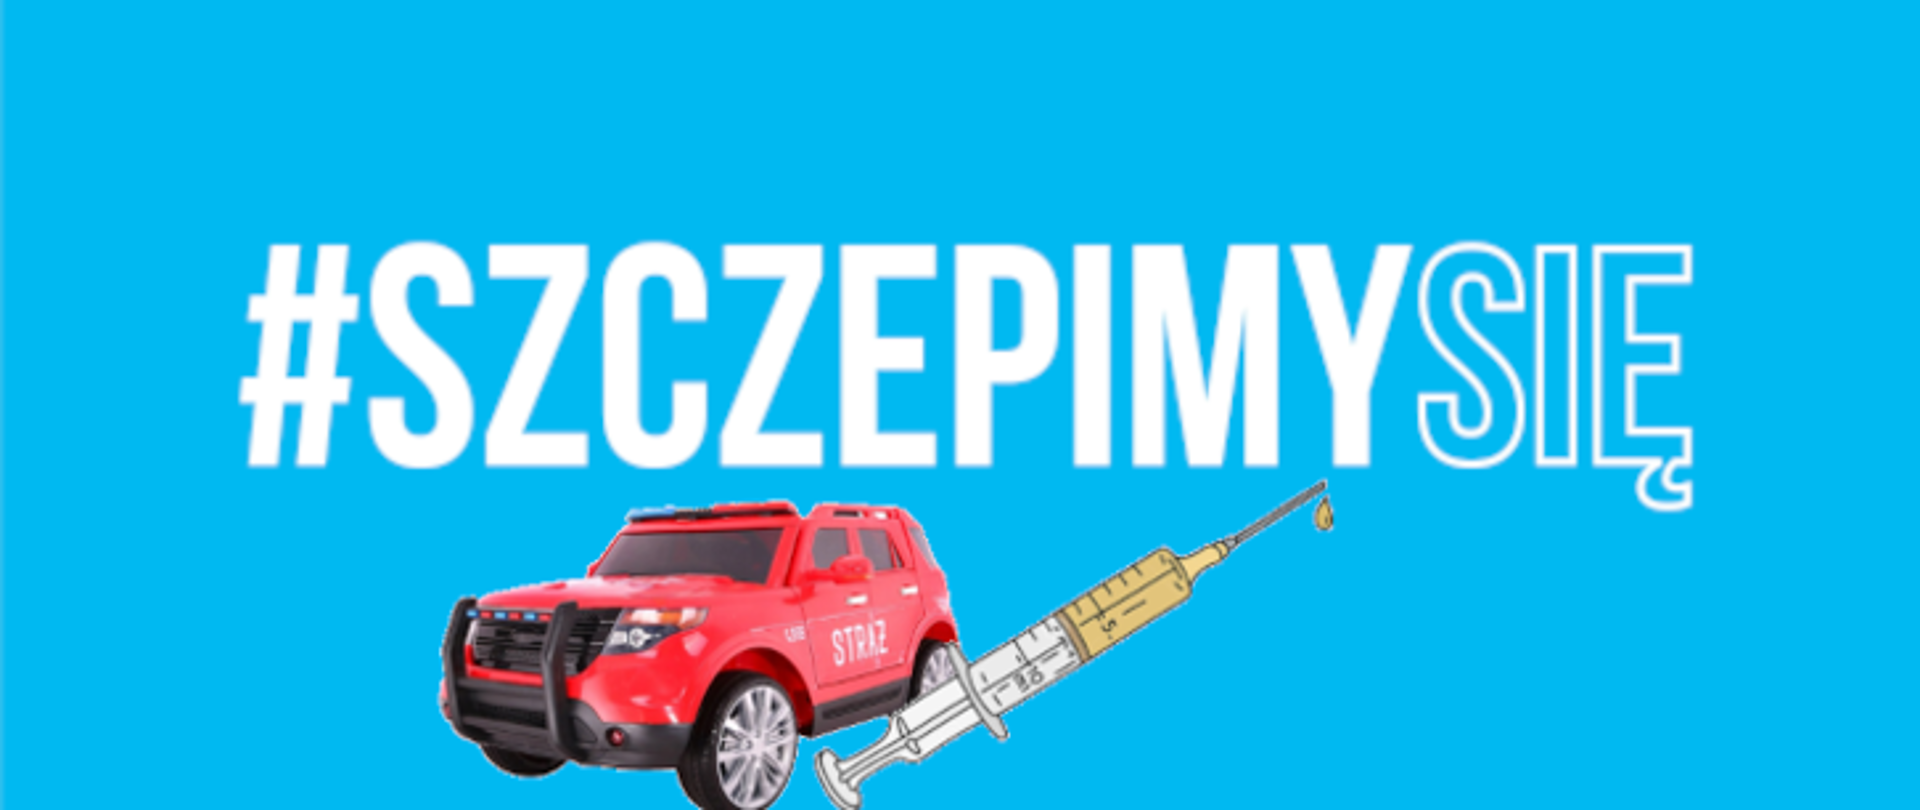 Logo - szczepimy się na zdjęciu #szczepimysię, samochód strażacki oraz szczepionka